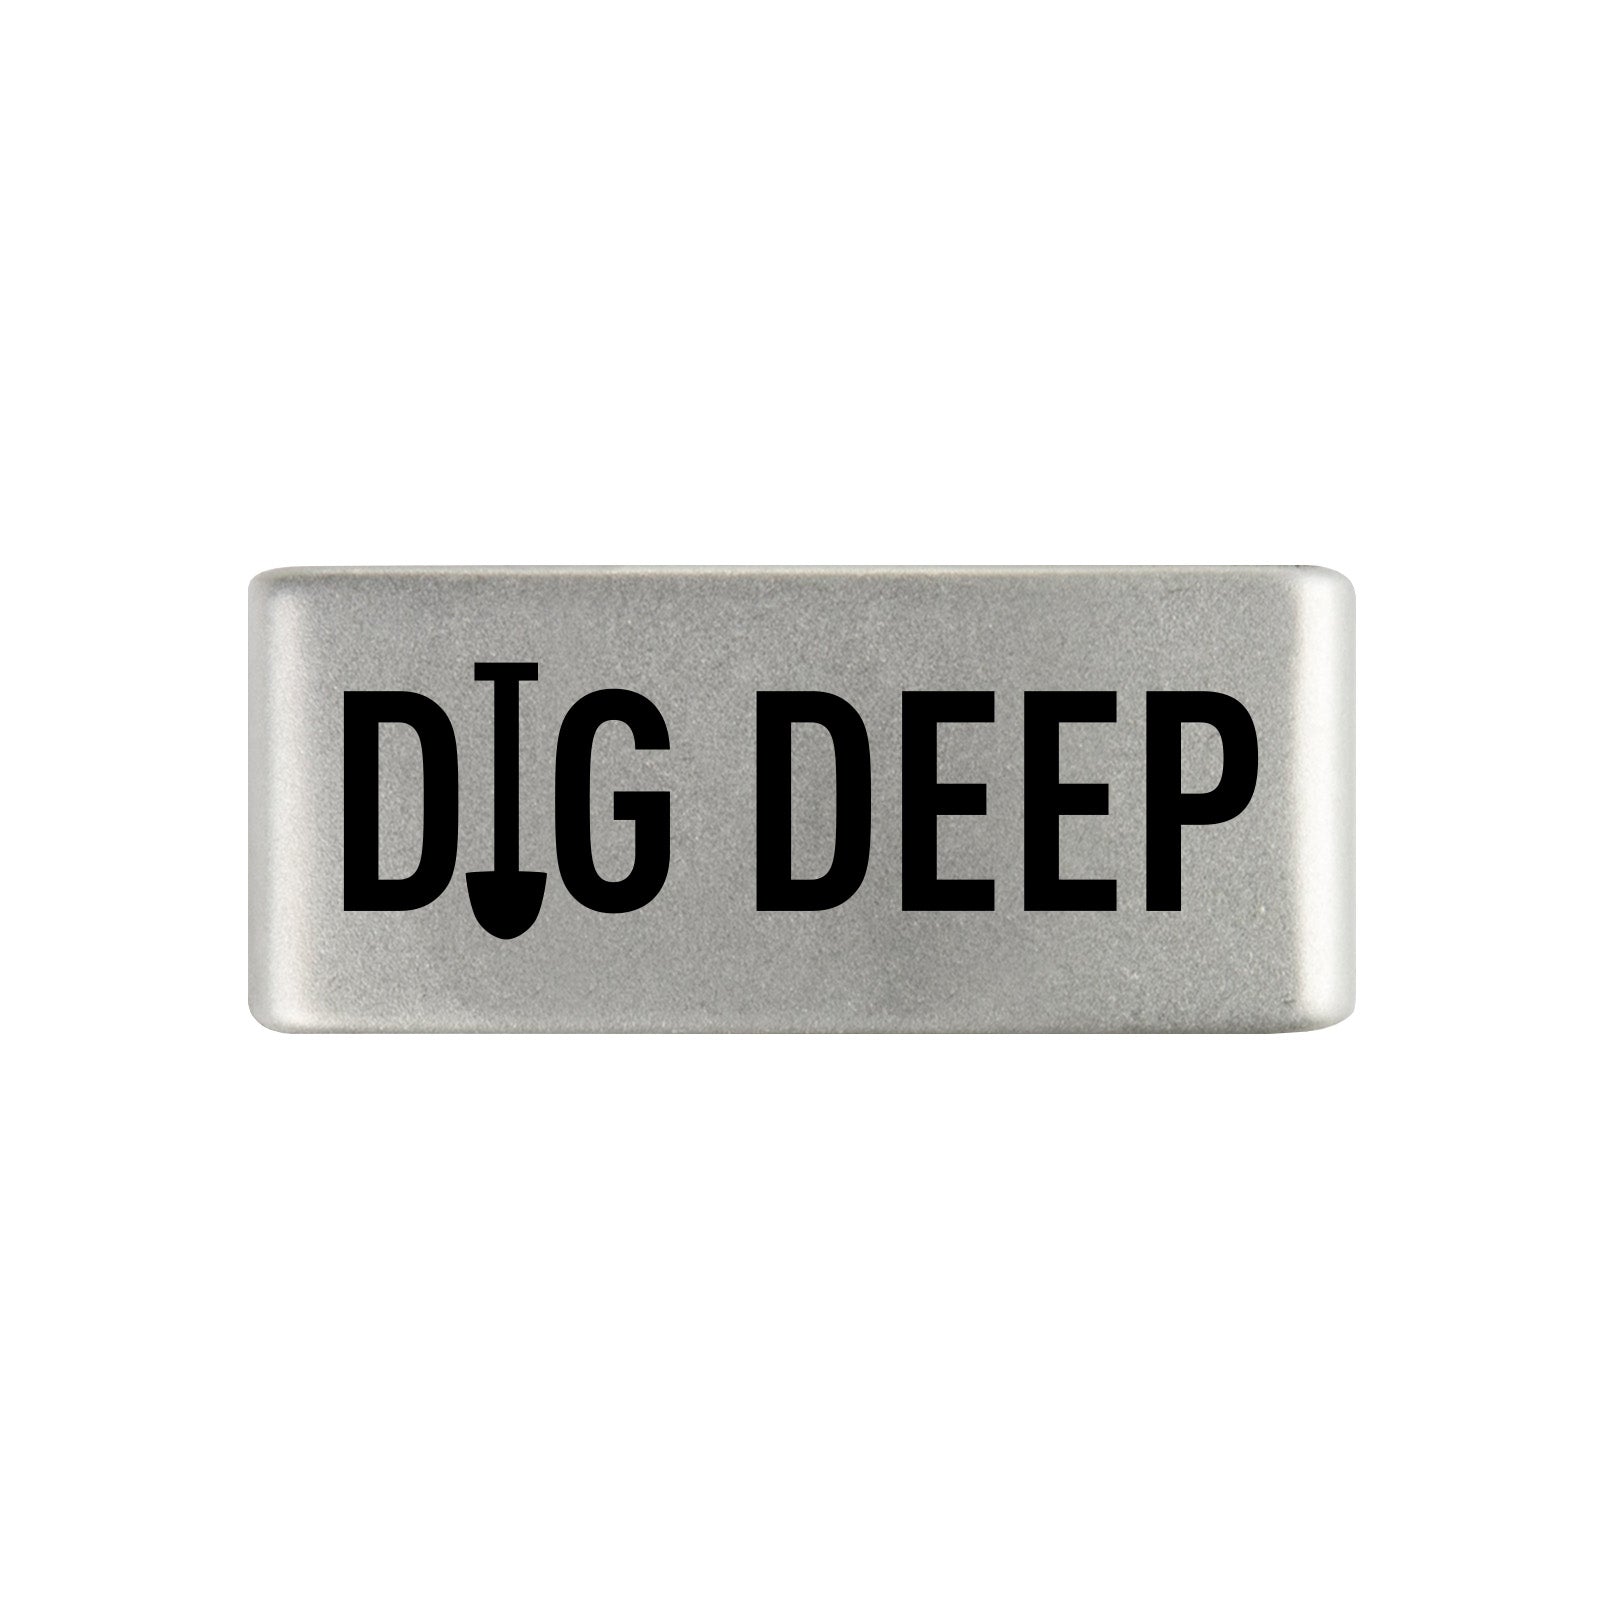 Dig Deep Badge Badge 13mm - ROAD iD